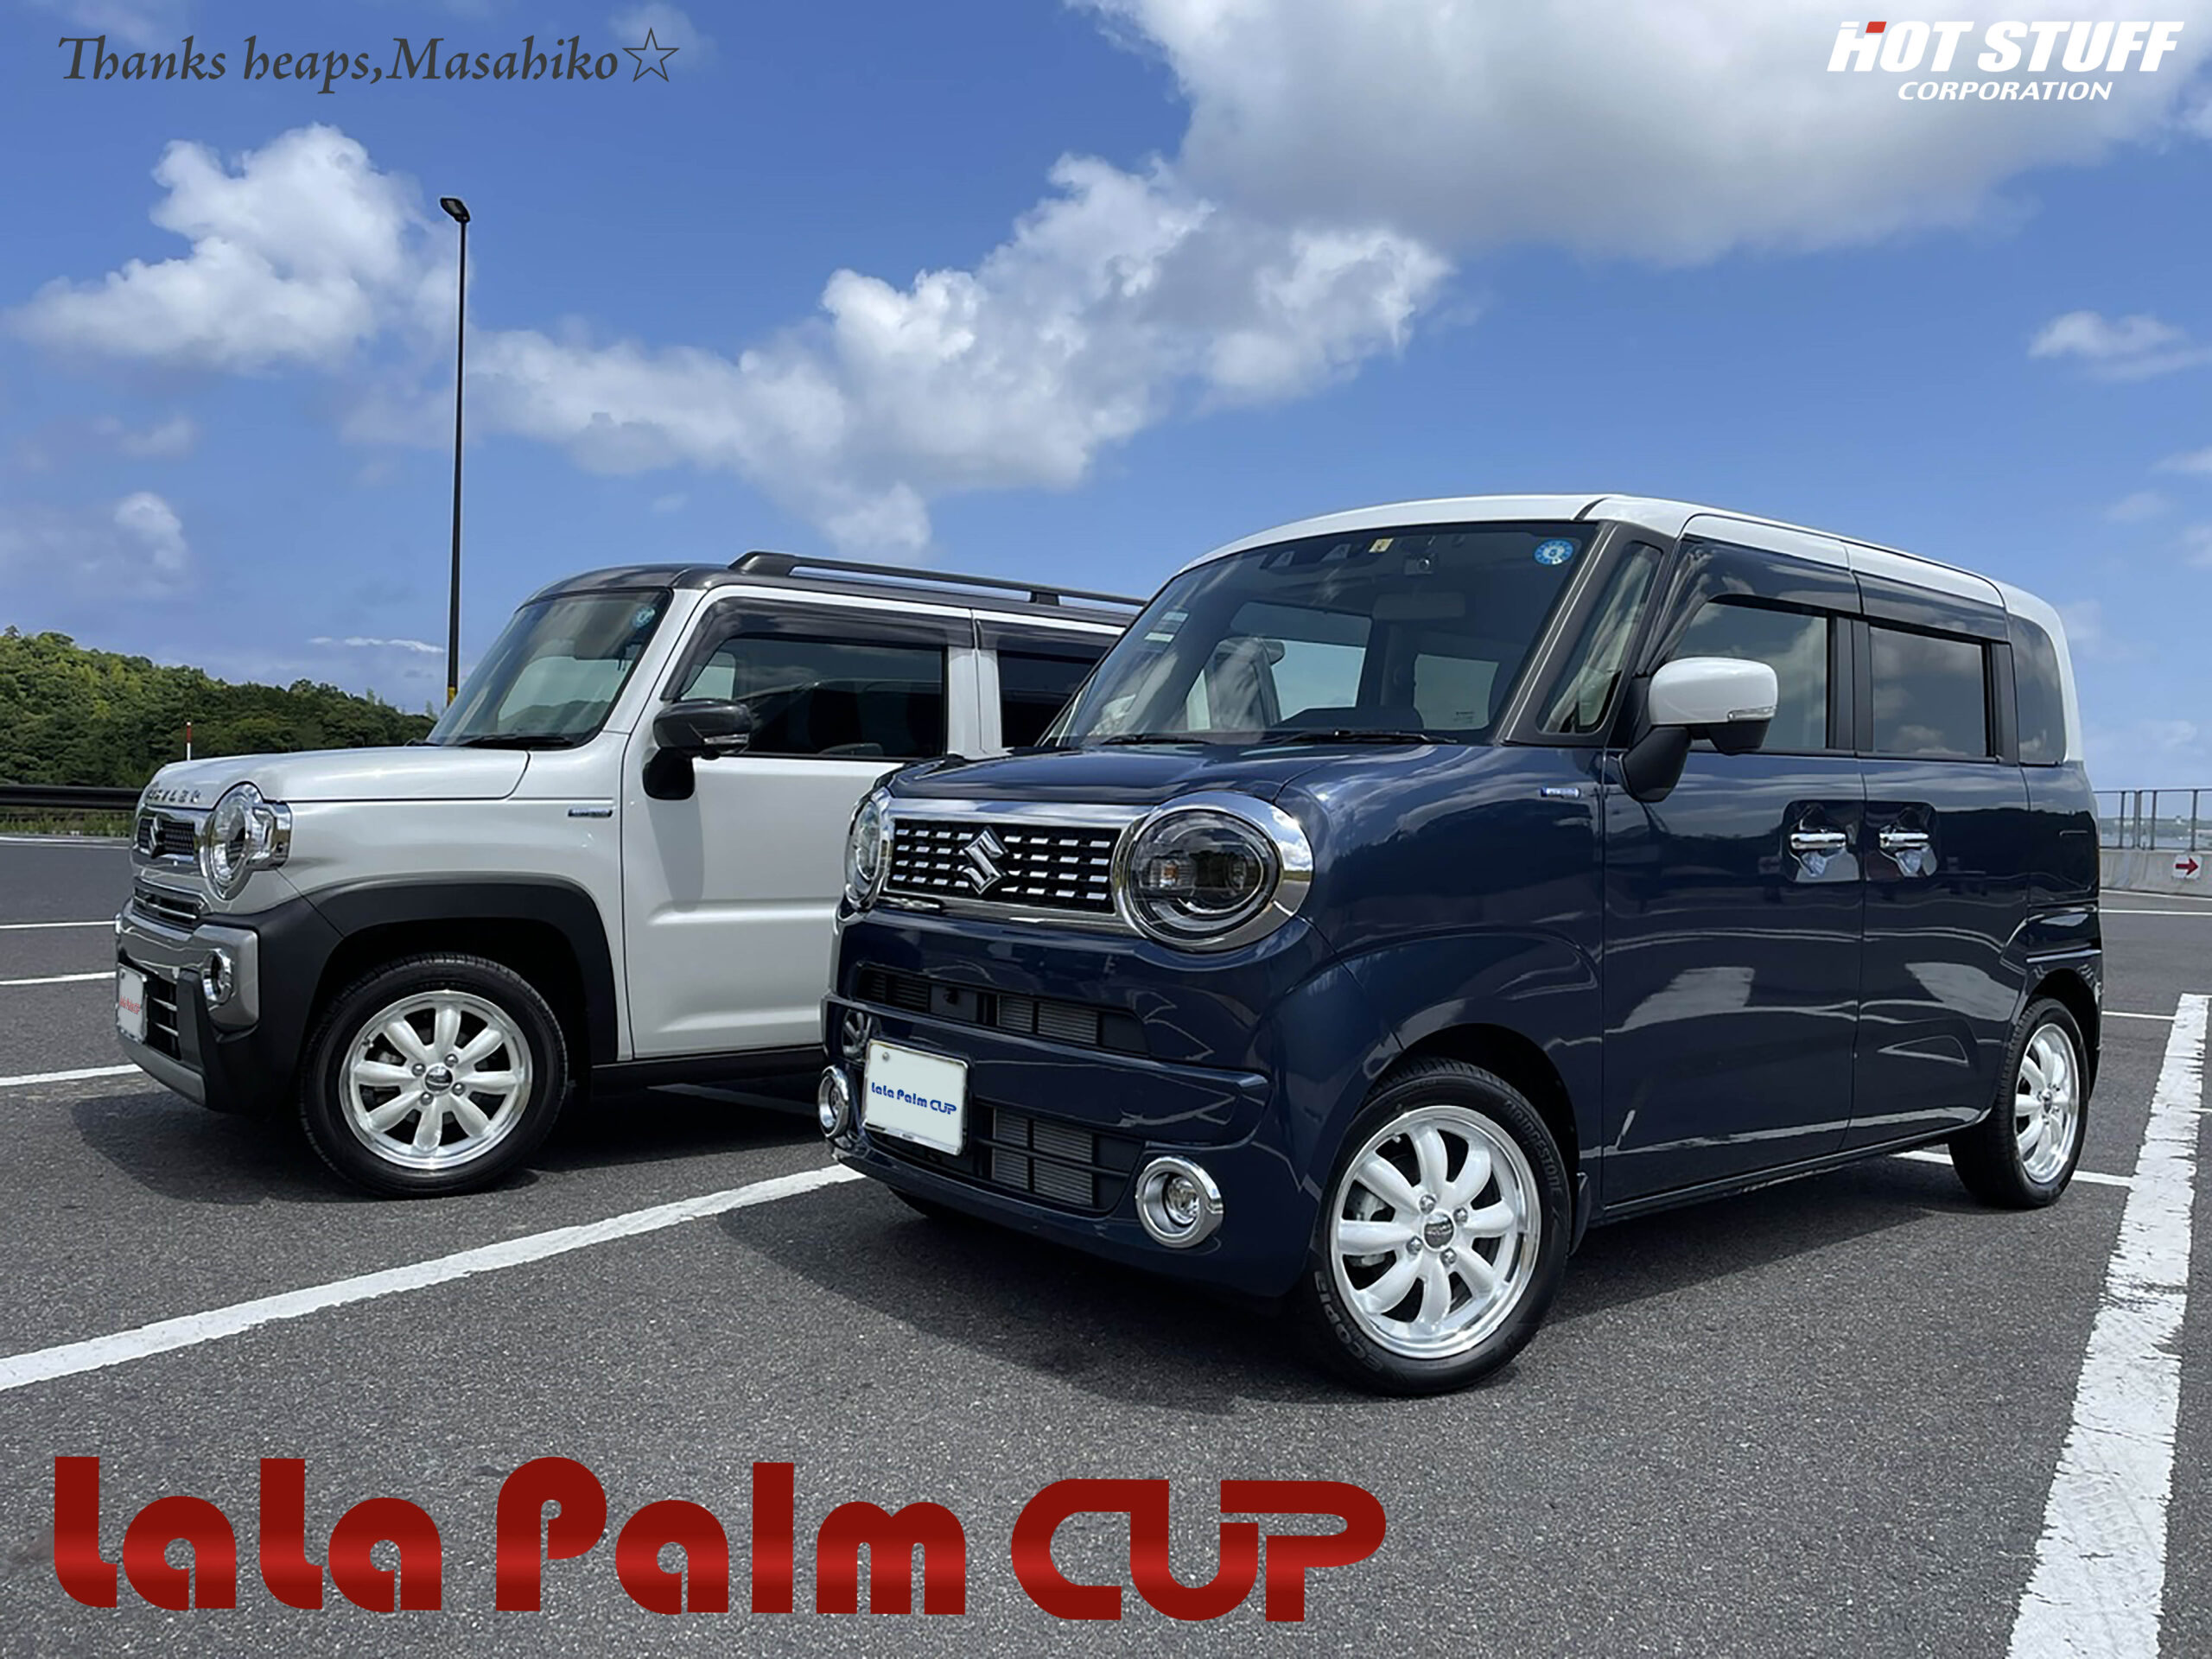 LaLa Palm CUP | ホットスタッフコーポレーション